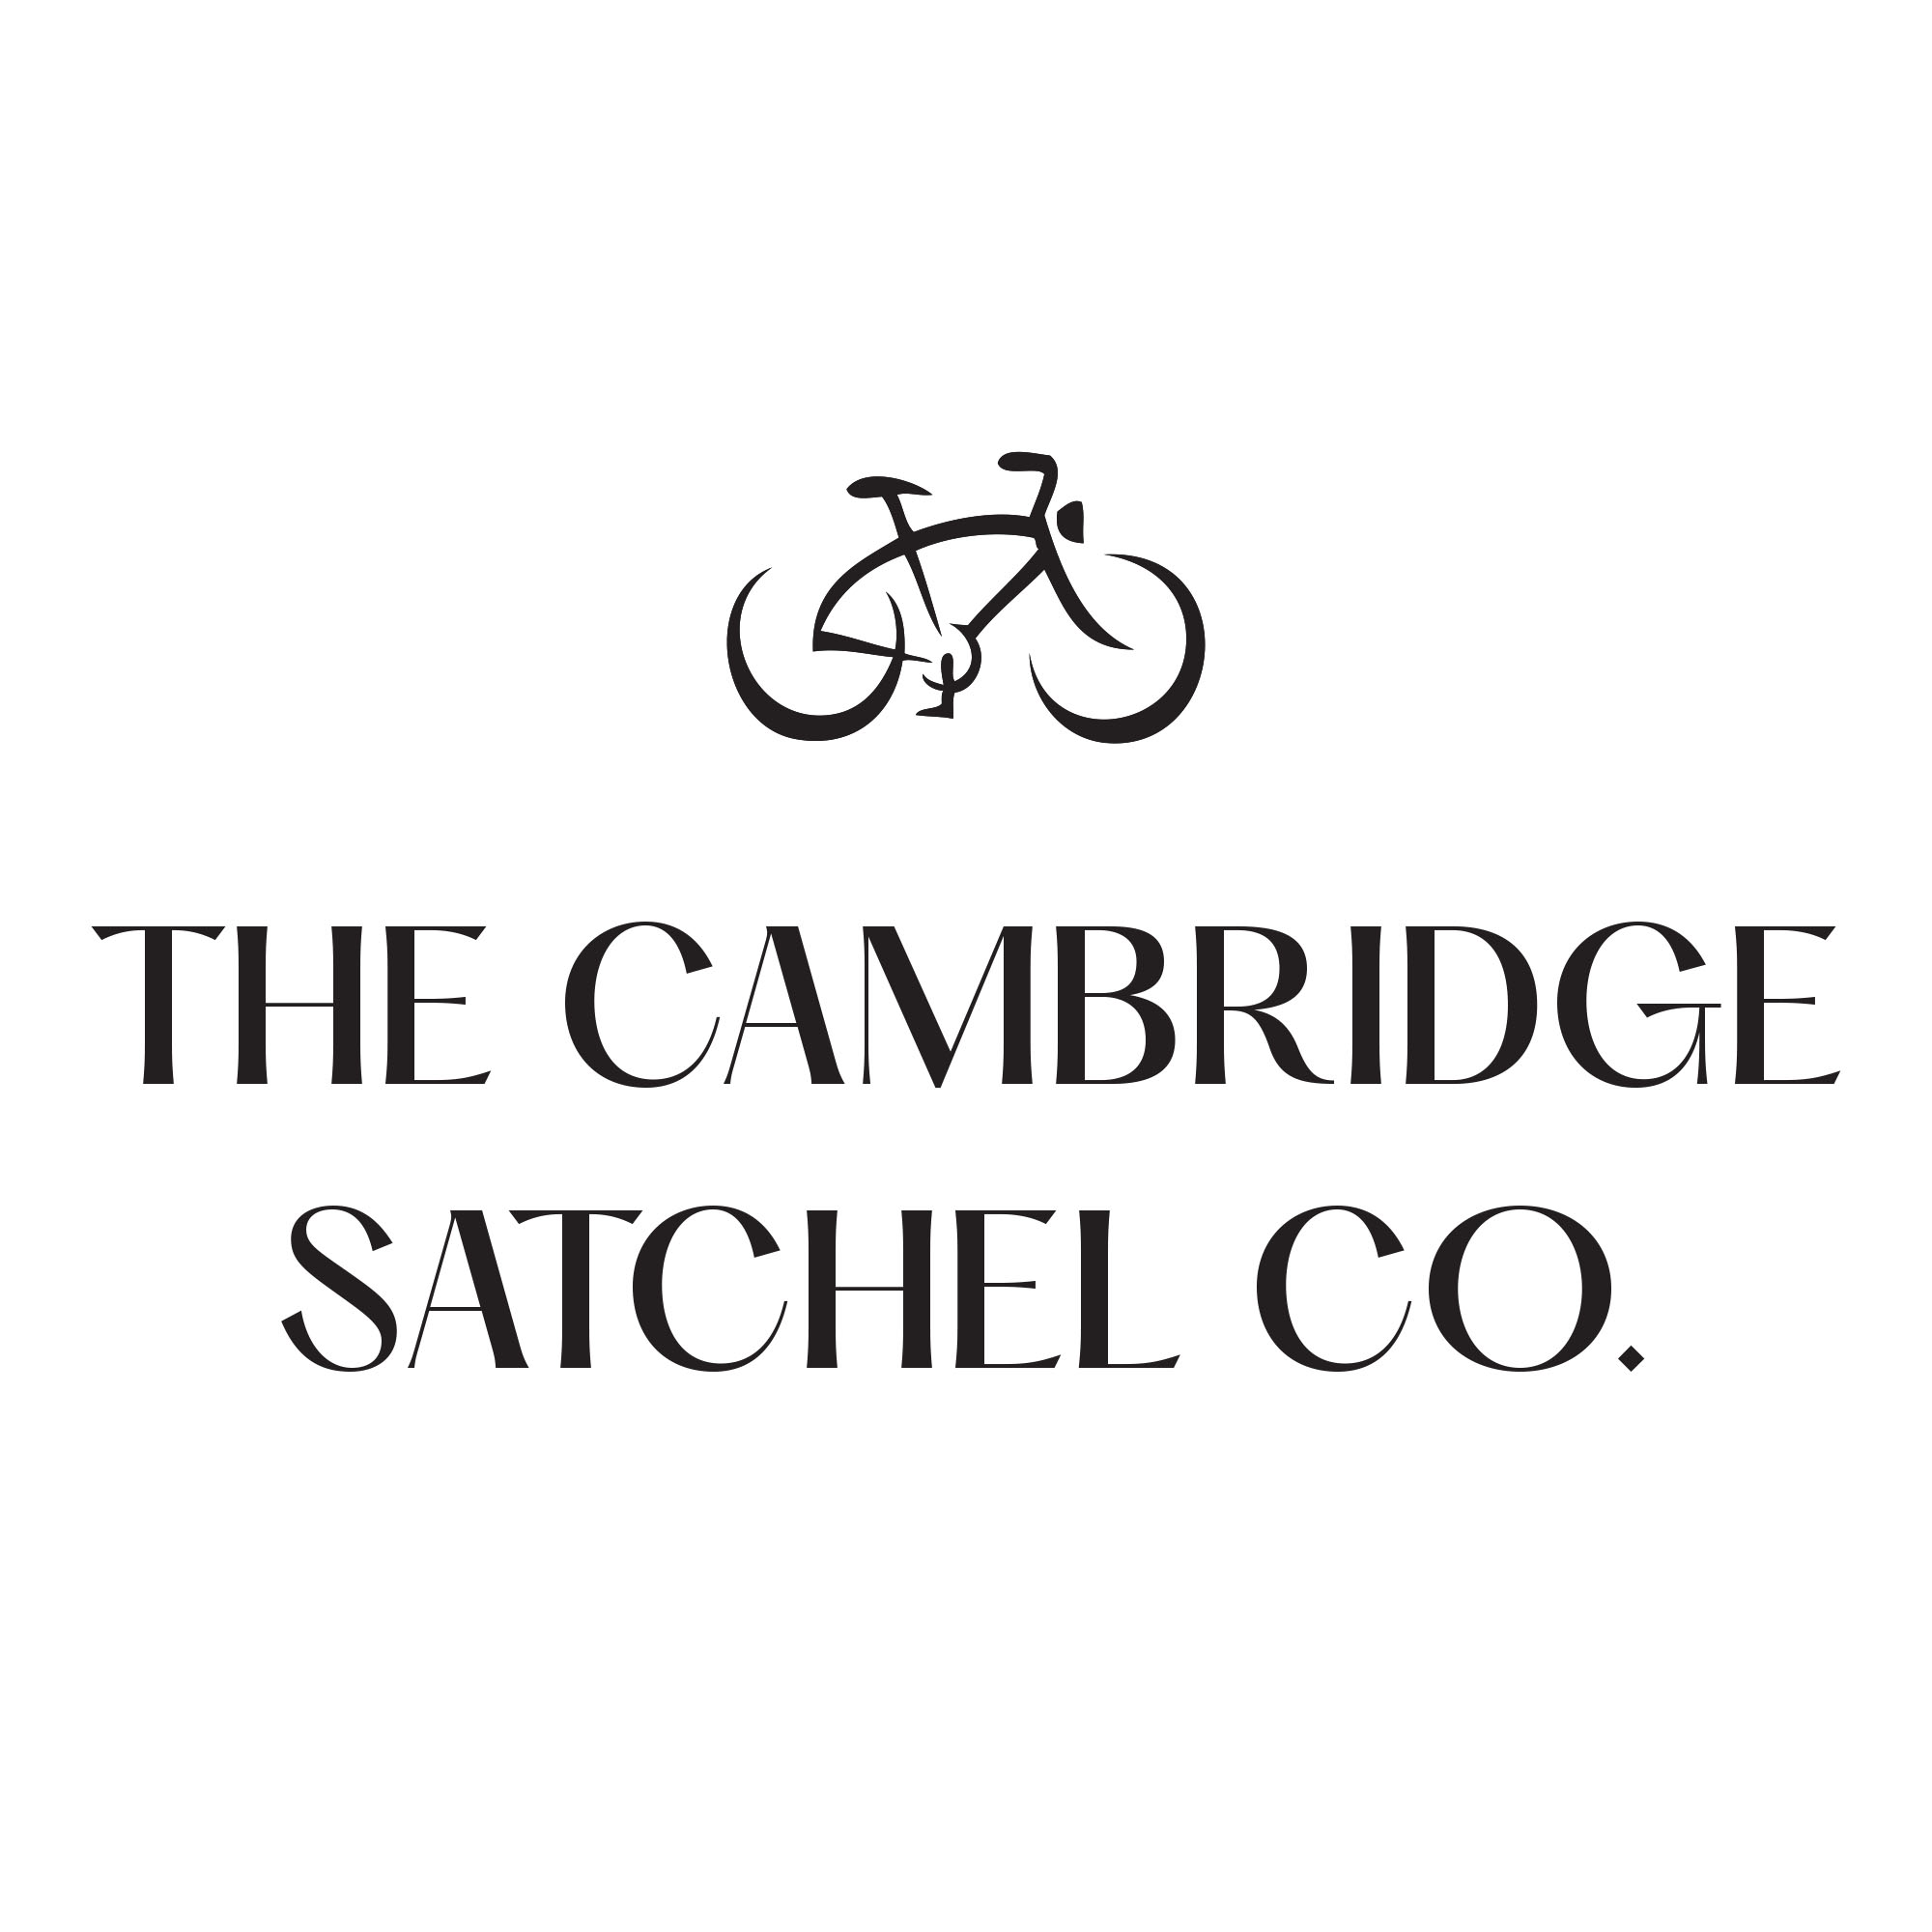 【黑五预热】Cambridge Satchel剑桥包官网大促！49£就能拿Mini糖果色剑桥包！